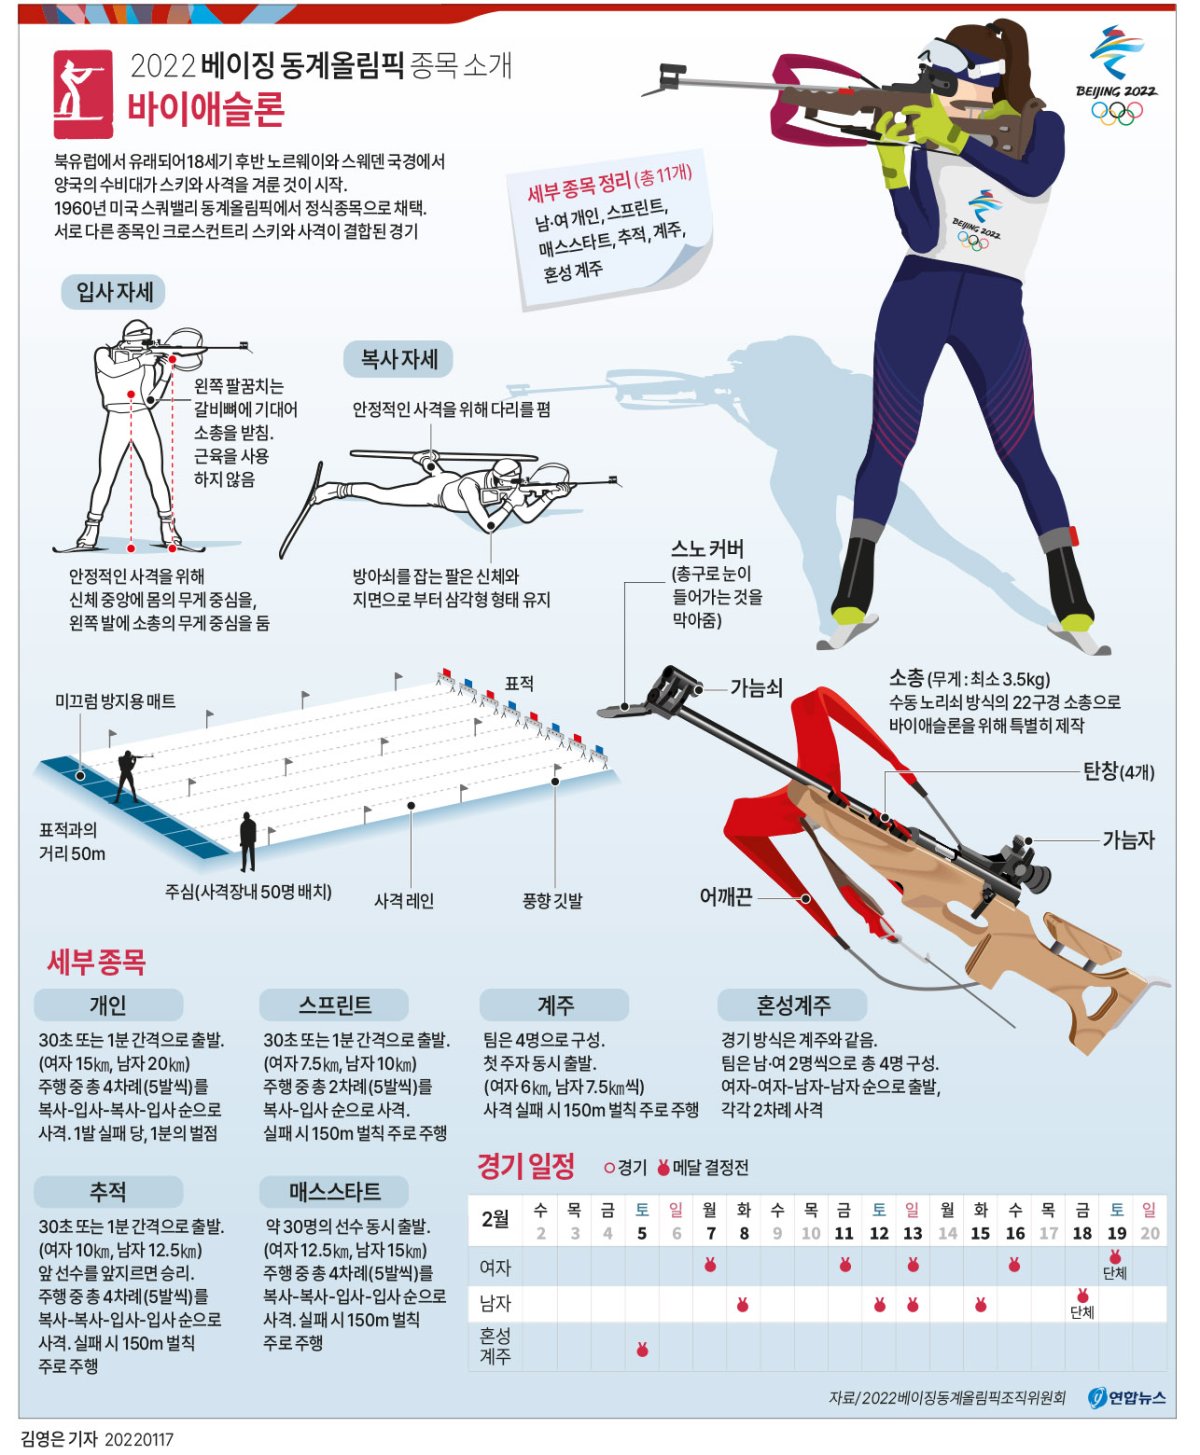  베이징 동계올림픽 종목 소개 - 바이애슬론